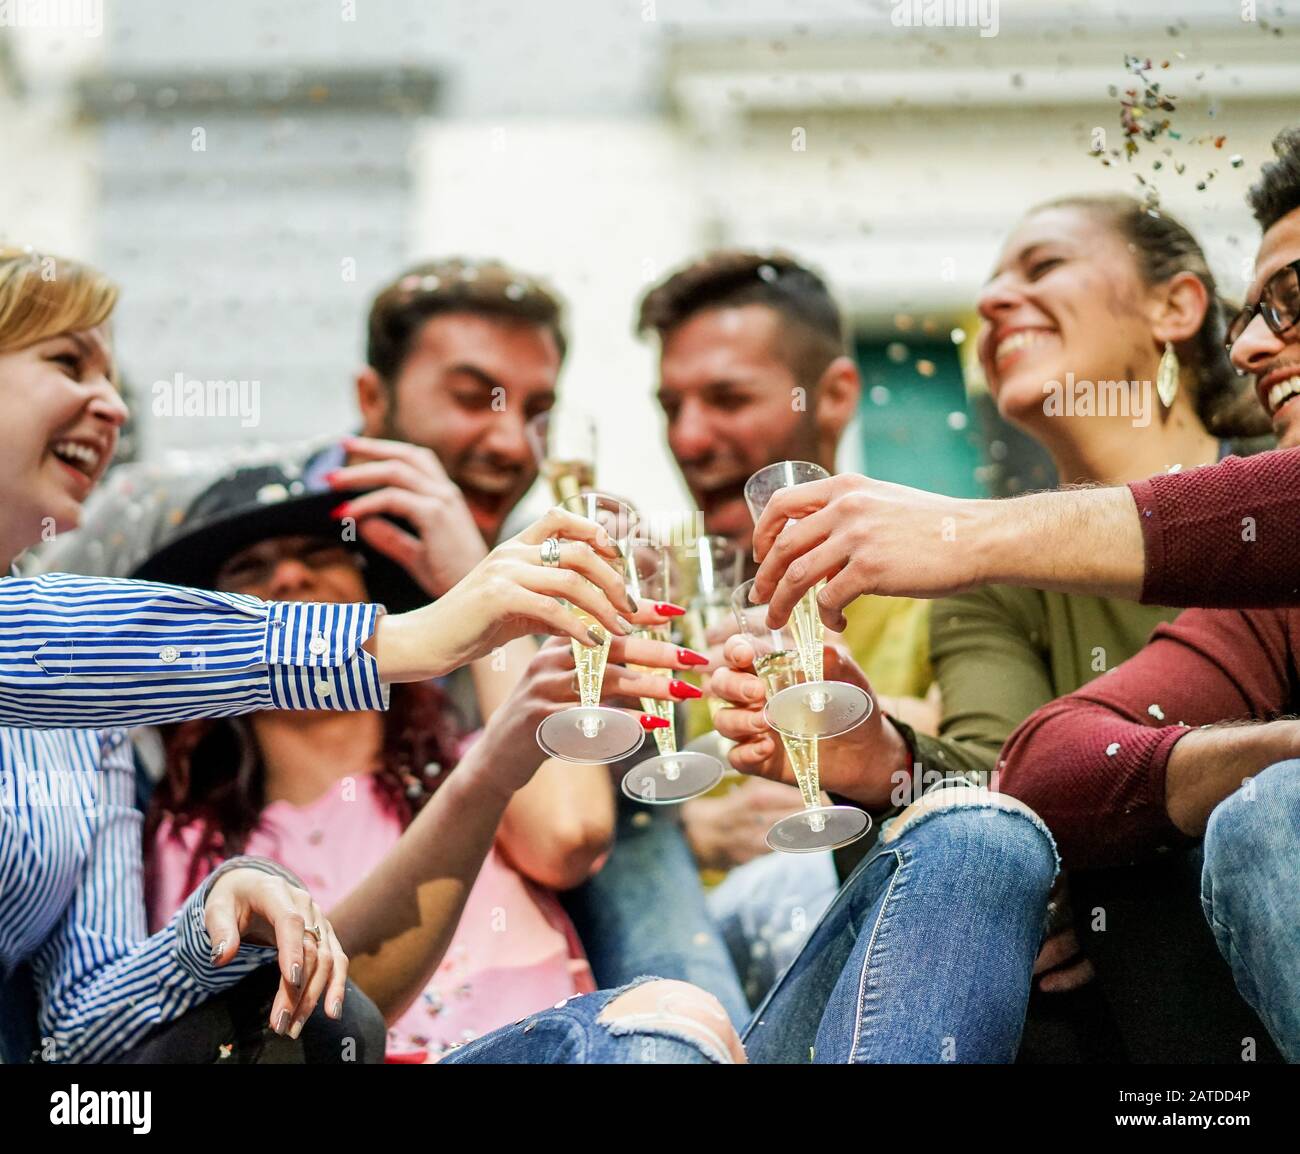 Fröhliche Freunde jubeln mit Champagner und feiern Party im Freien - Junge Studenten feiern Trink- und Lachen - Lautes fest laut, Konzept - Hauptfokus Stockfoto